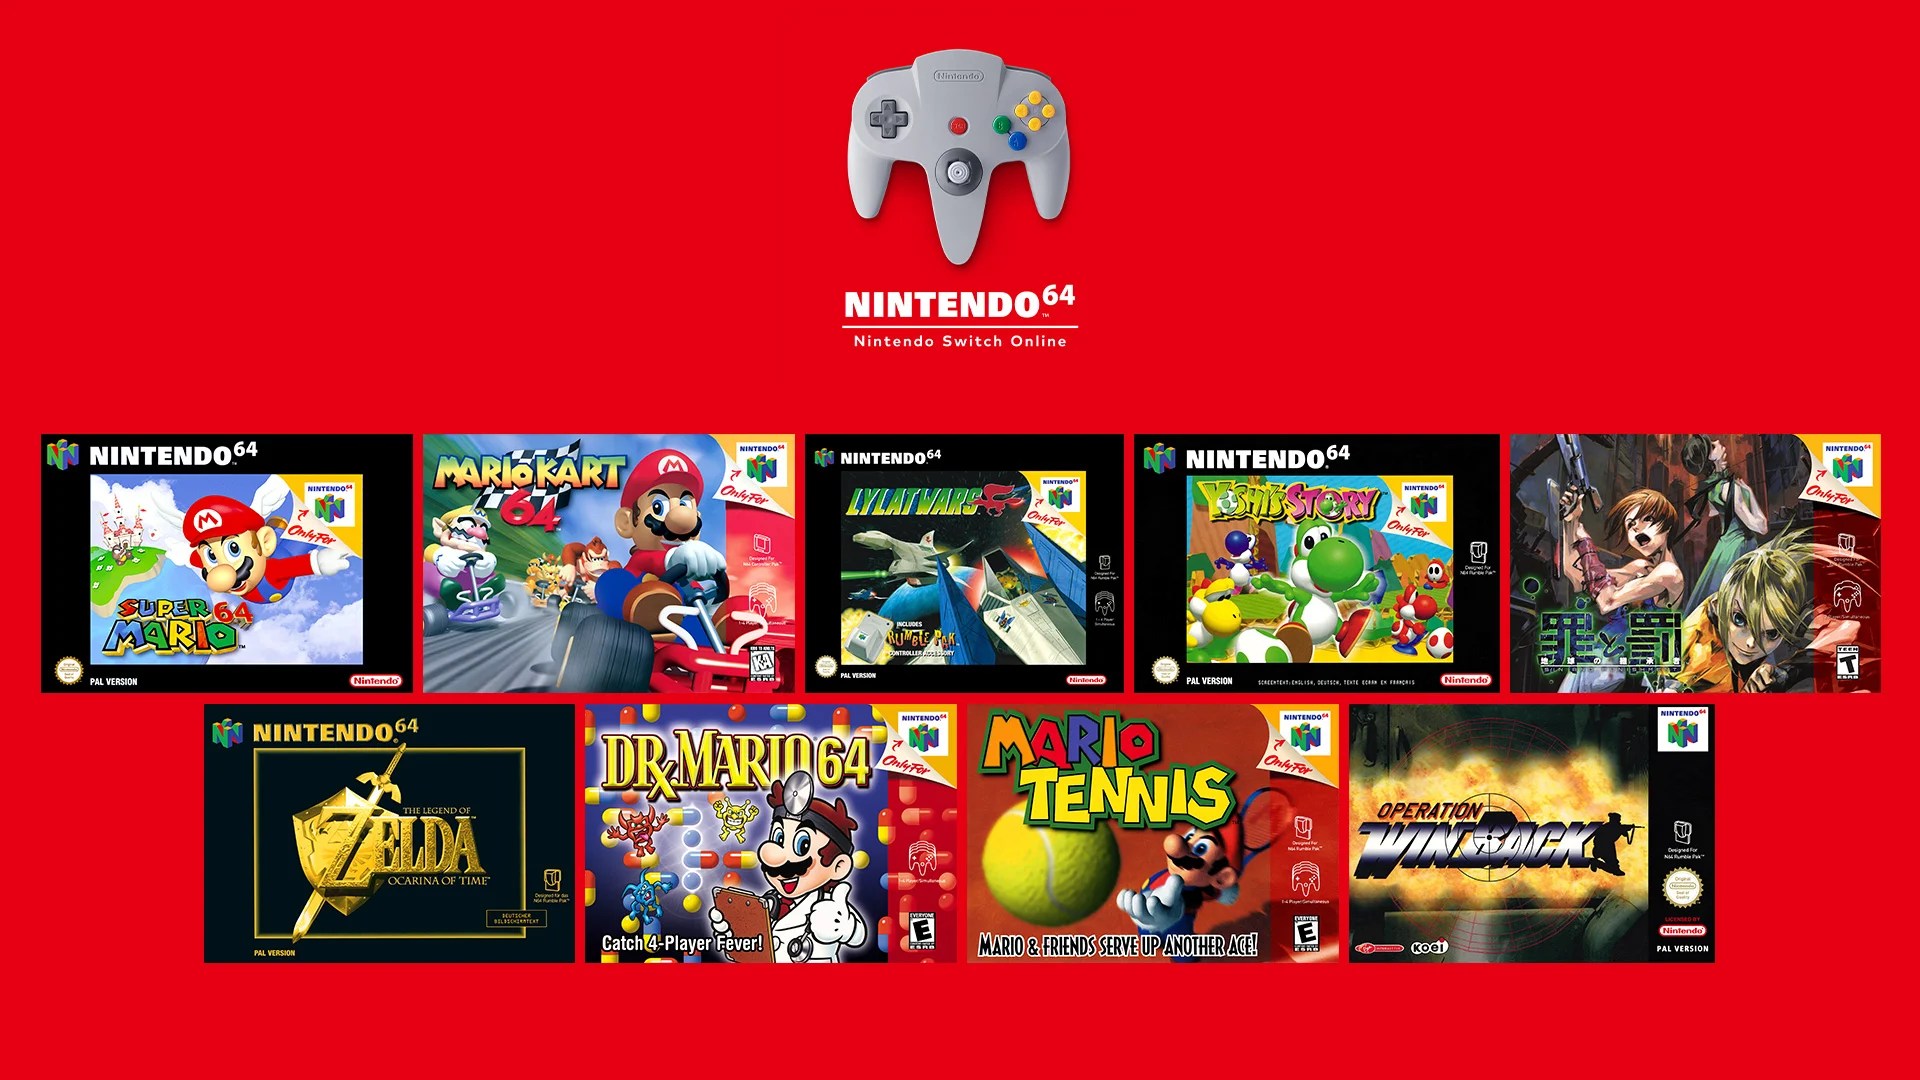 Les jeux Nintendo 64 disponibles dans l'offre Nintendo Switch Online + Pack additionnel